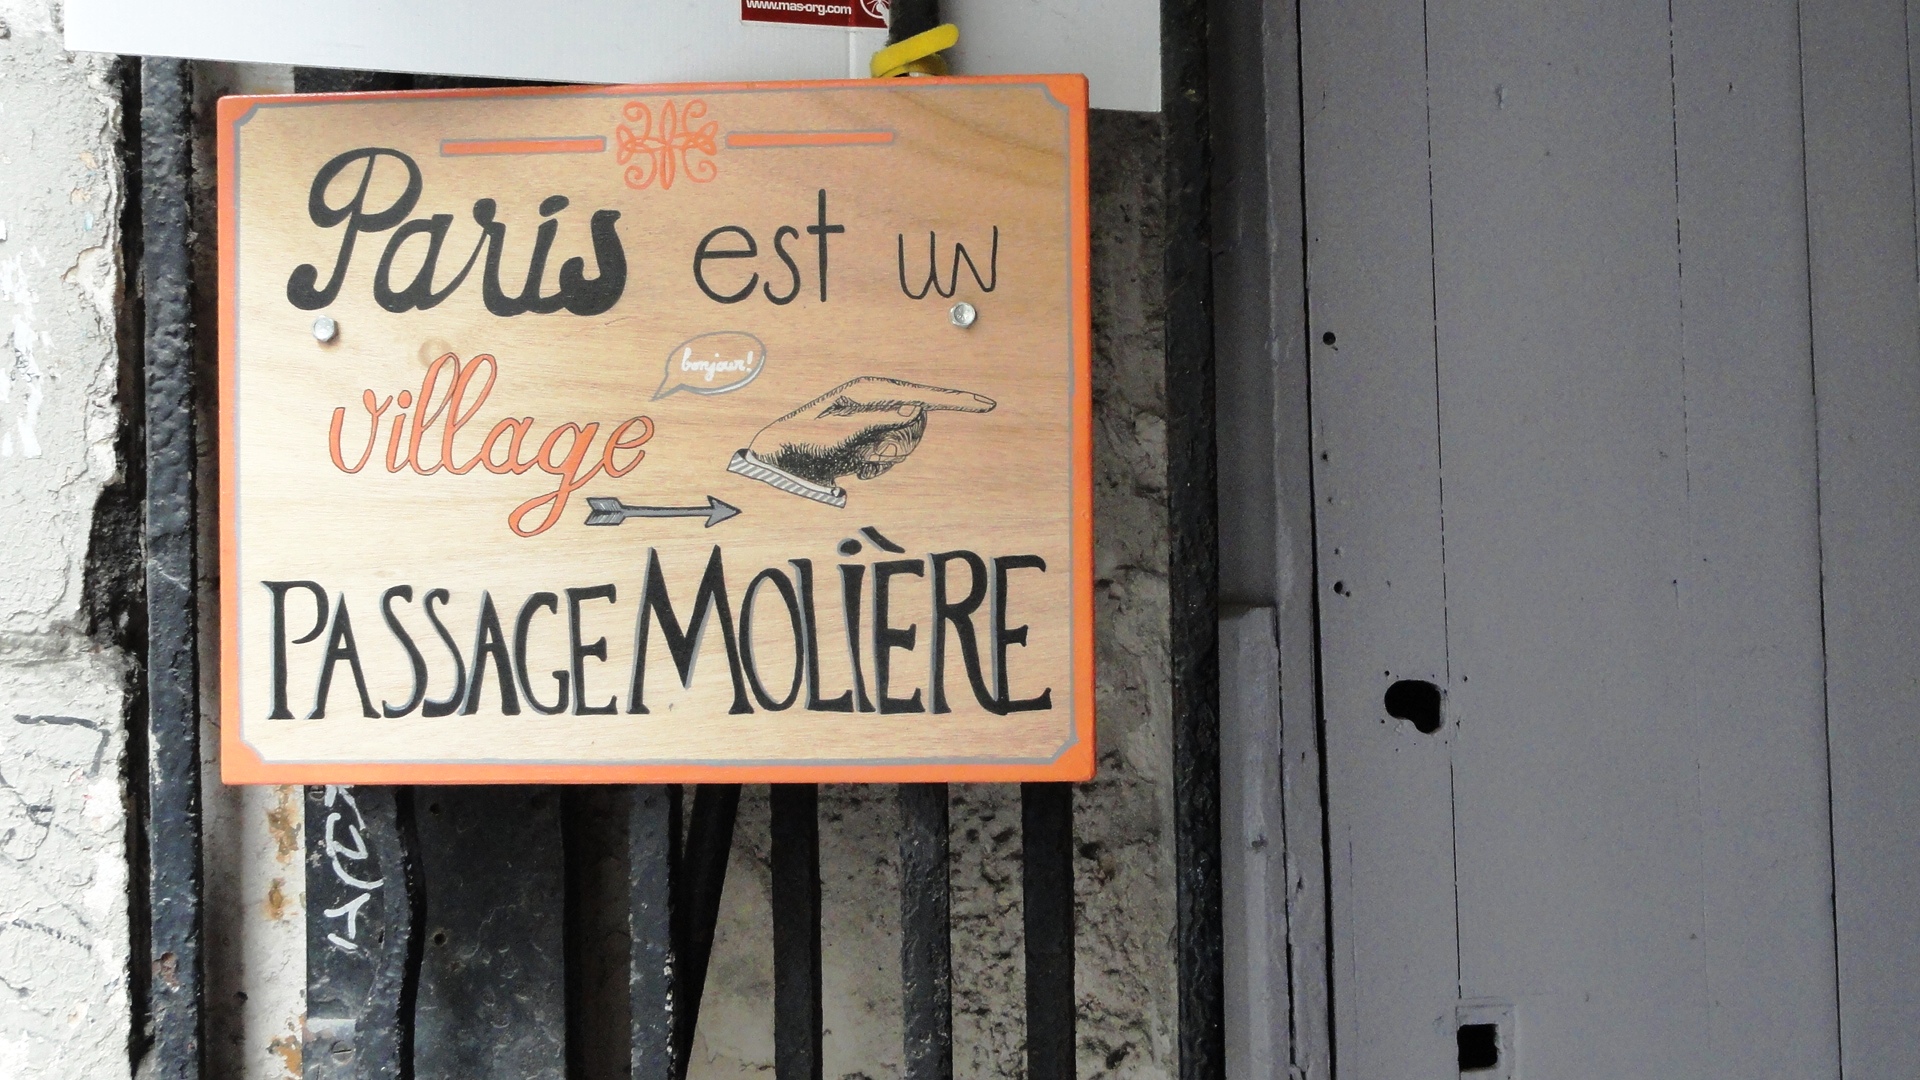 Passage Molière - "Paris est un village"